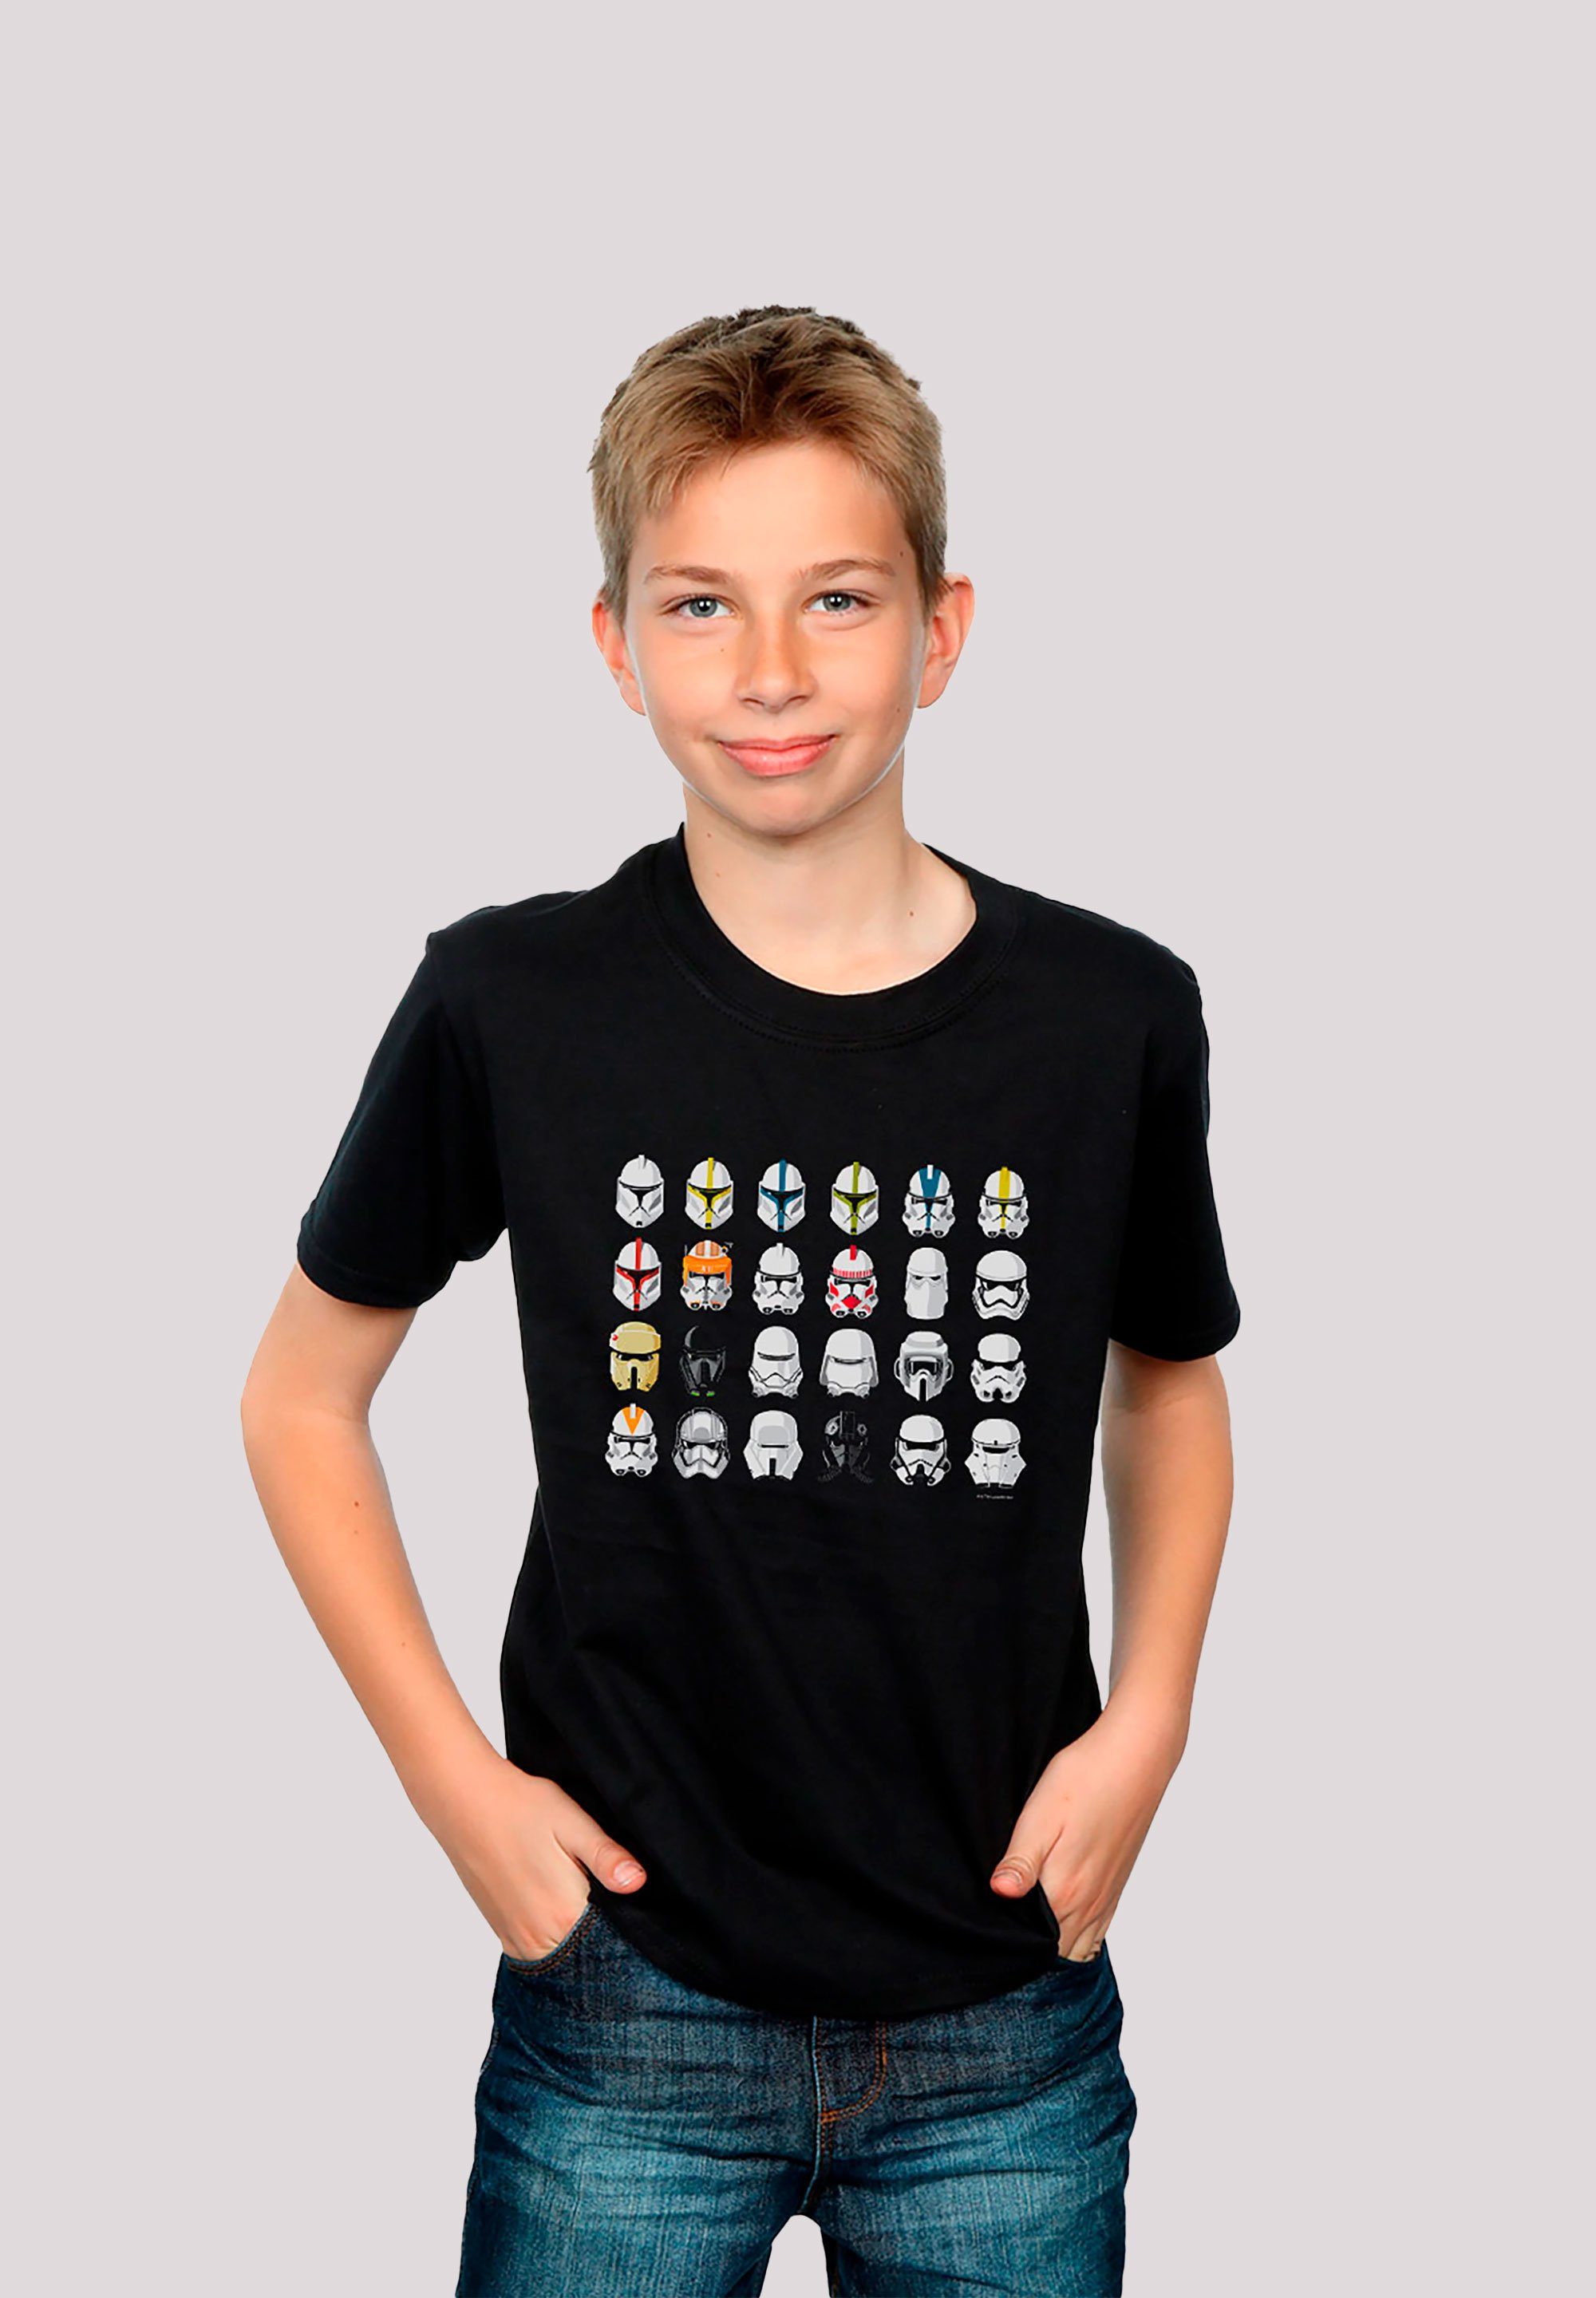 F4NT4STIC T-Shirt Star Wars Stormtrooper Piloten Helme Krieg der Sterne Print schwarz